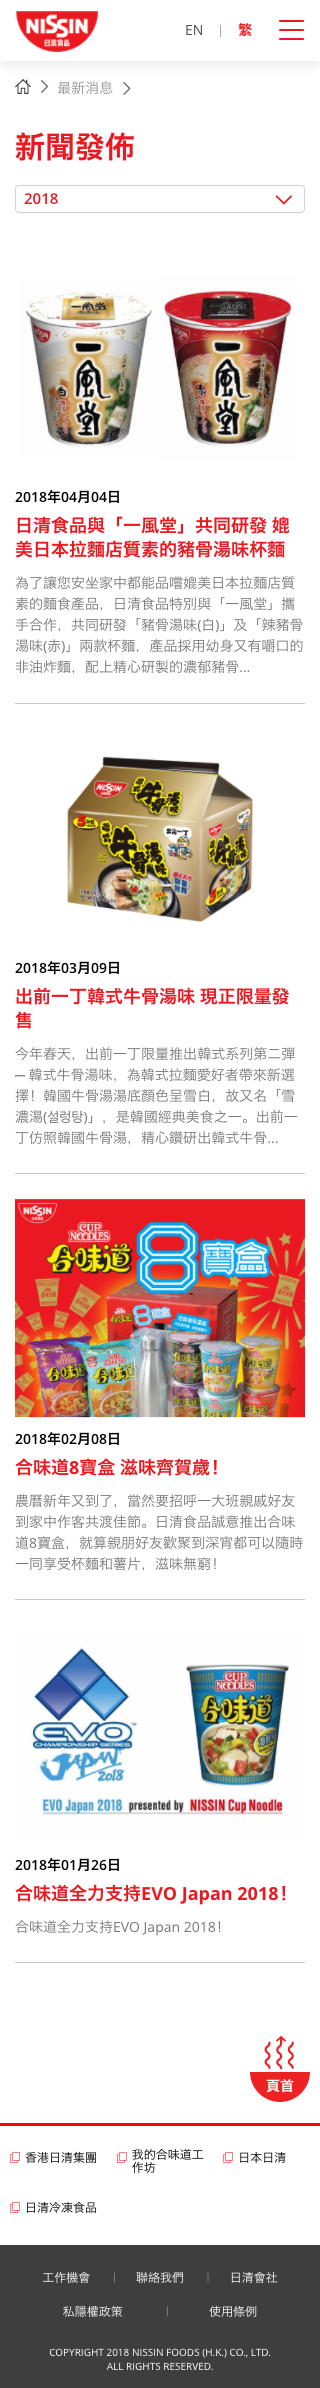 Nissin Foods HK website screenshot for mobile version 3 of 5